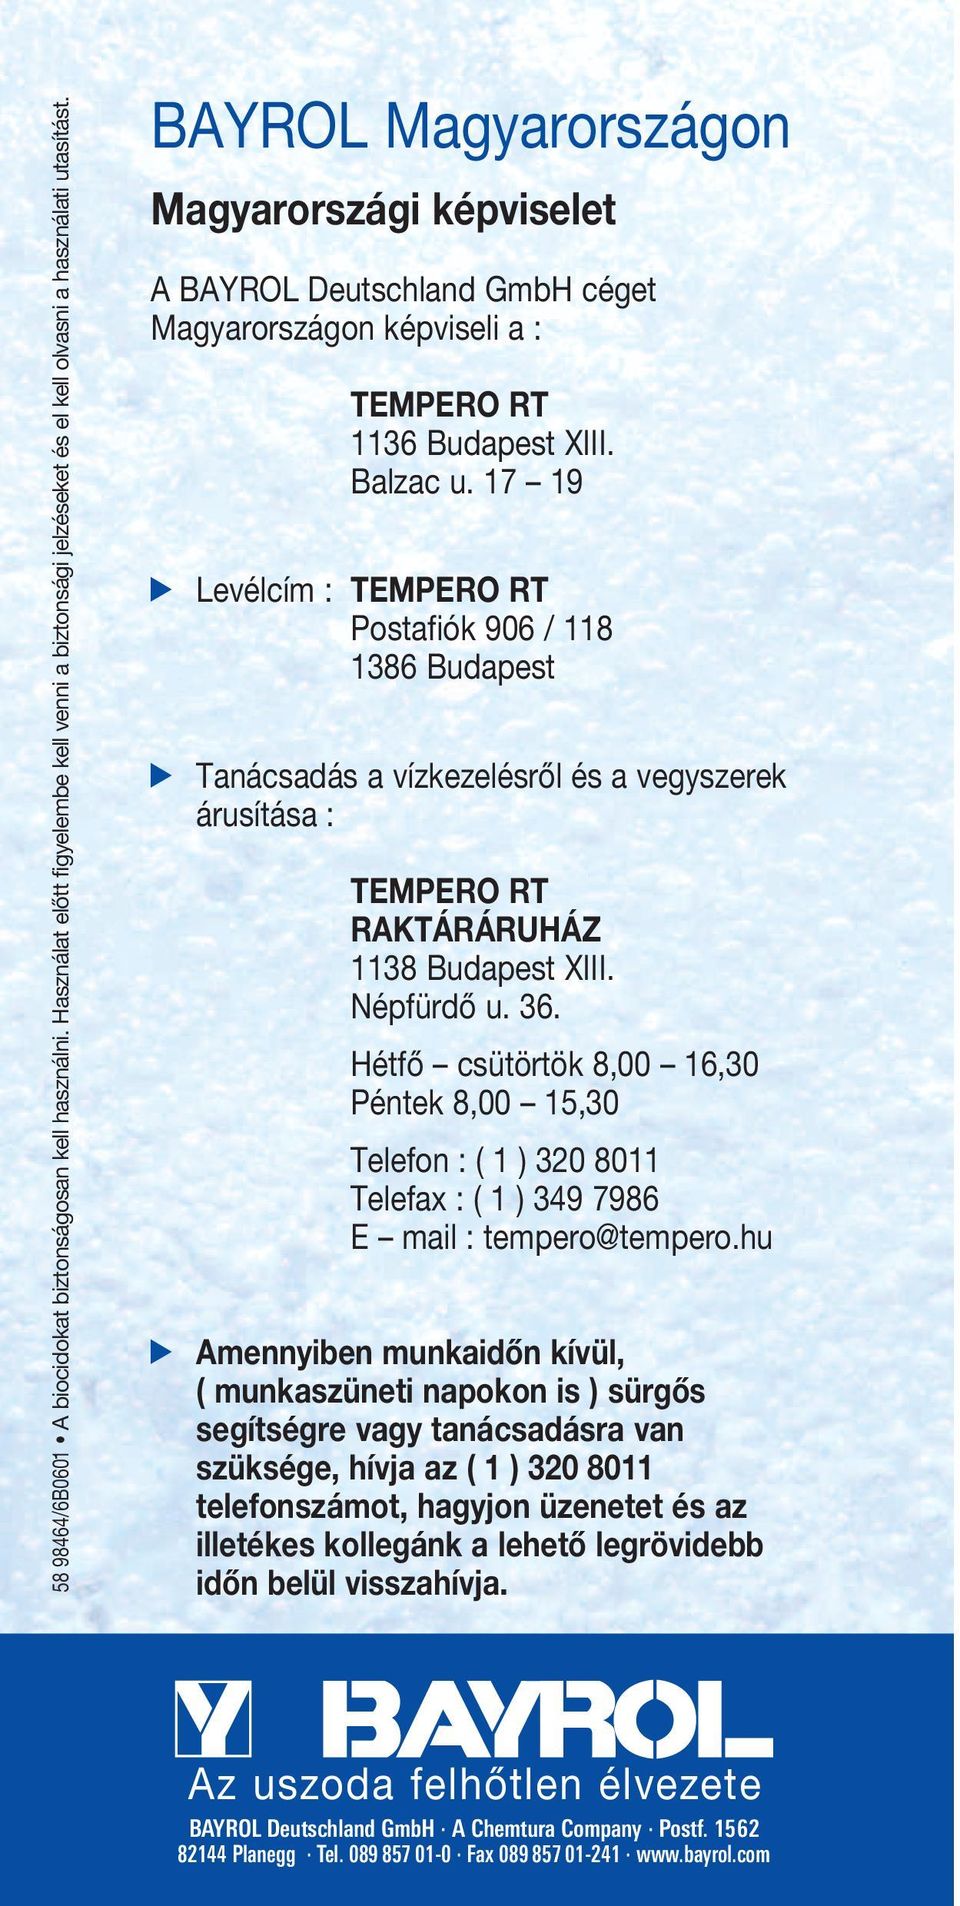 17 19 Levélcím : TEMPERO RT Postafiók 906 / 118 1386 Budapest Tanácsadás a vízkezelésről és a vegyszerek árusítása : TEMPERO RT RAKTÁRÁRUHÁZ 1138 Budapest XIII. Népfürdő u. 36.